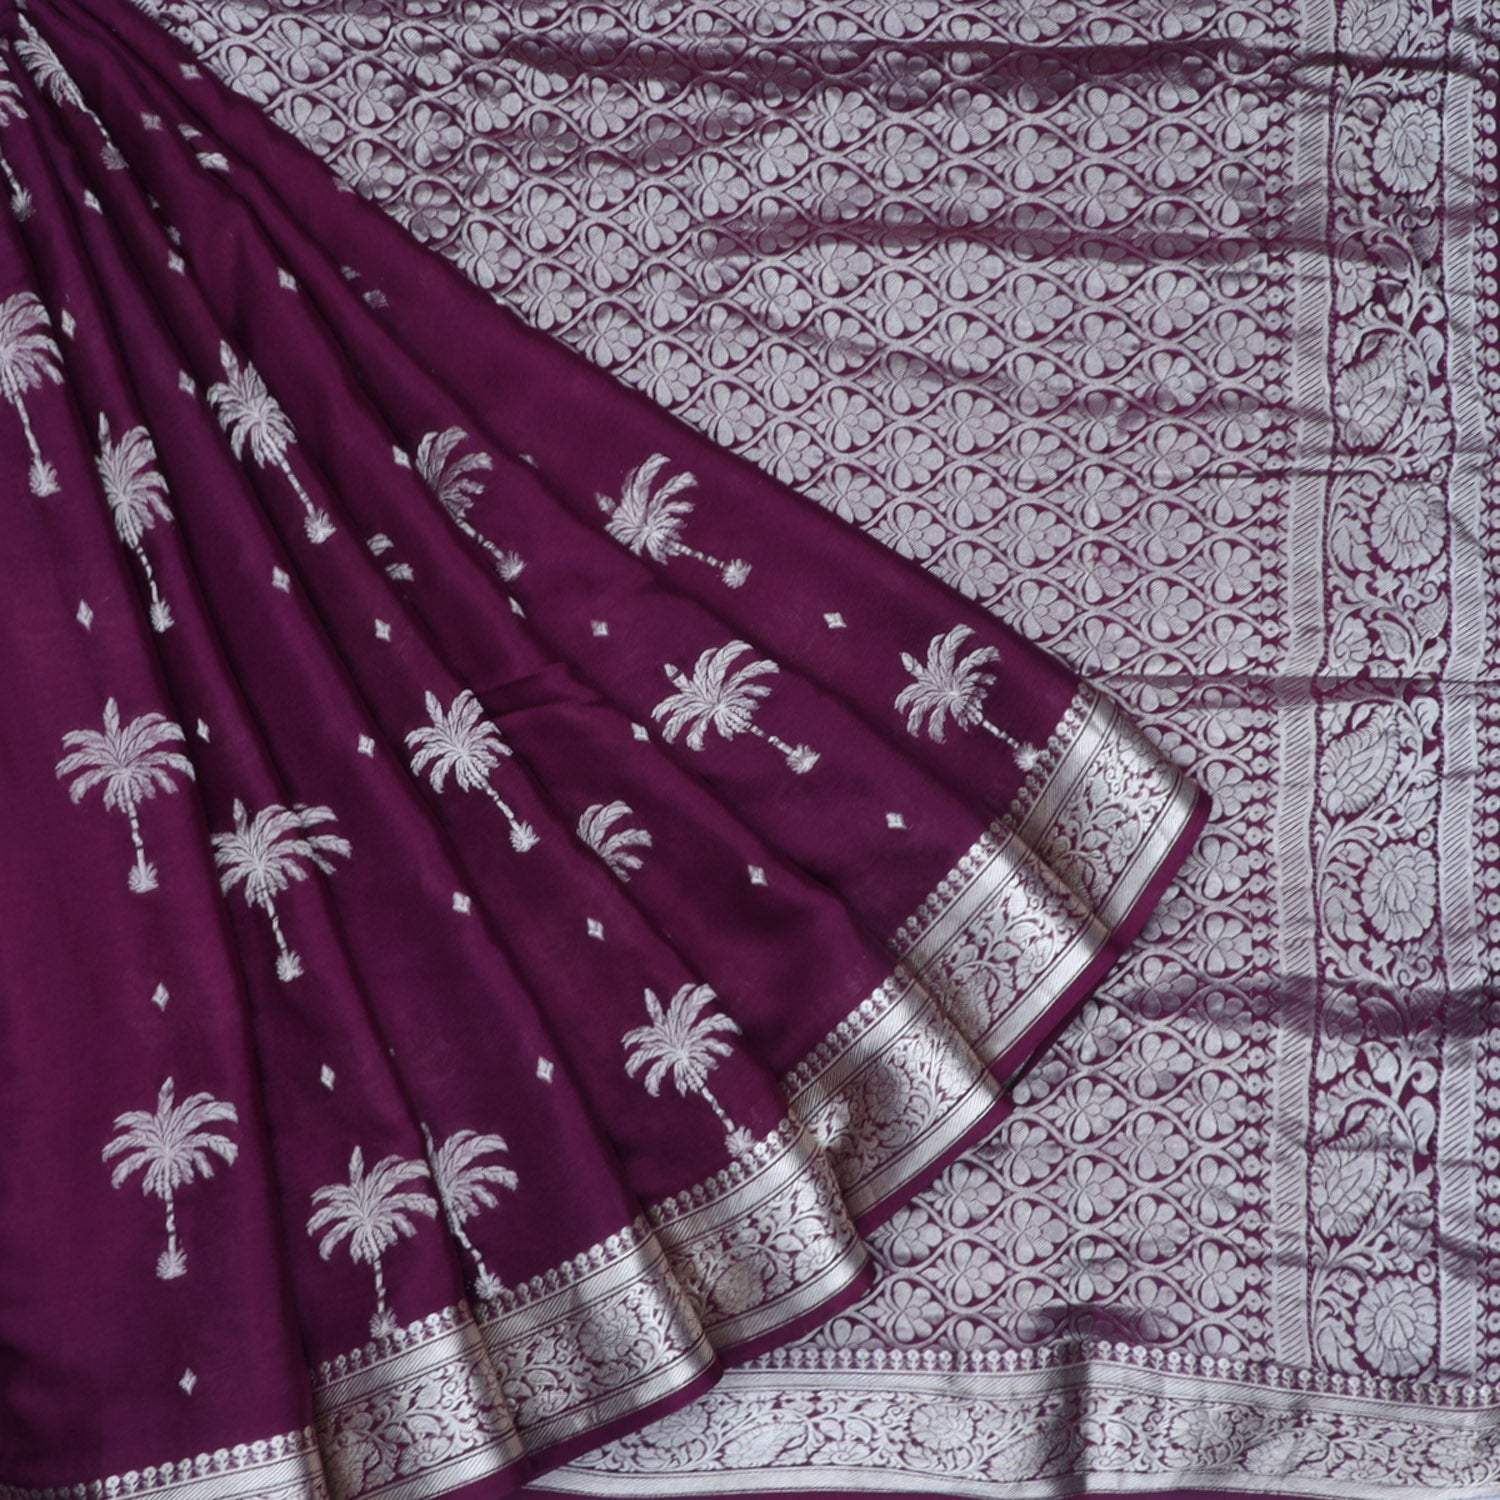 Plum Purple Banarasi Silk Saree With Tree Motifs - Singhania's